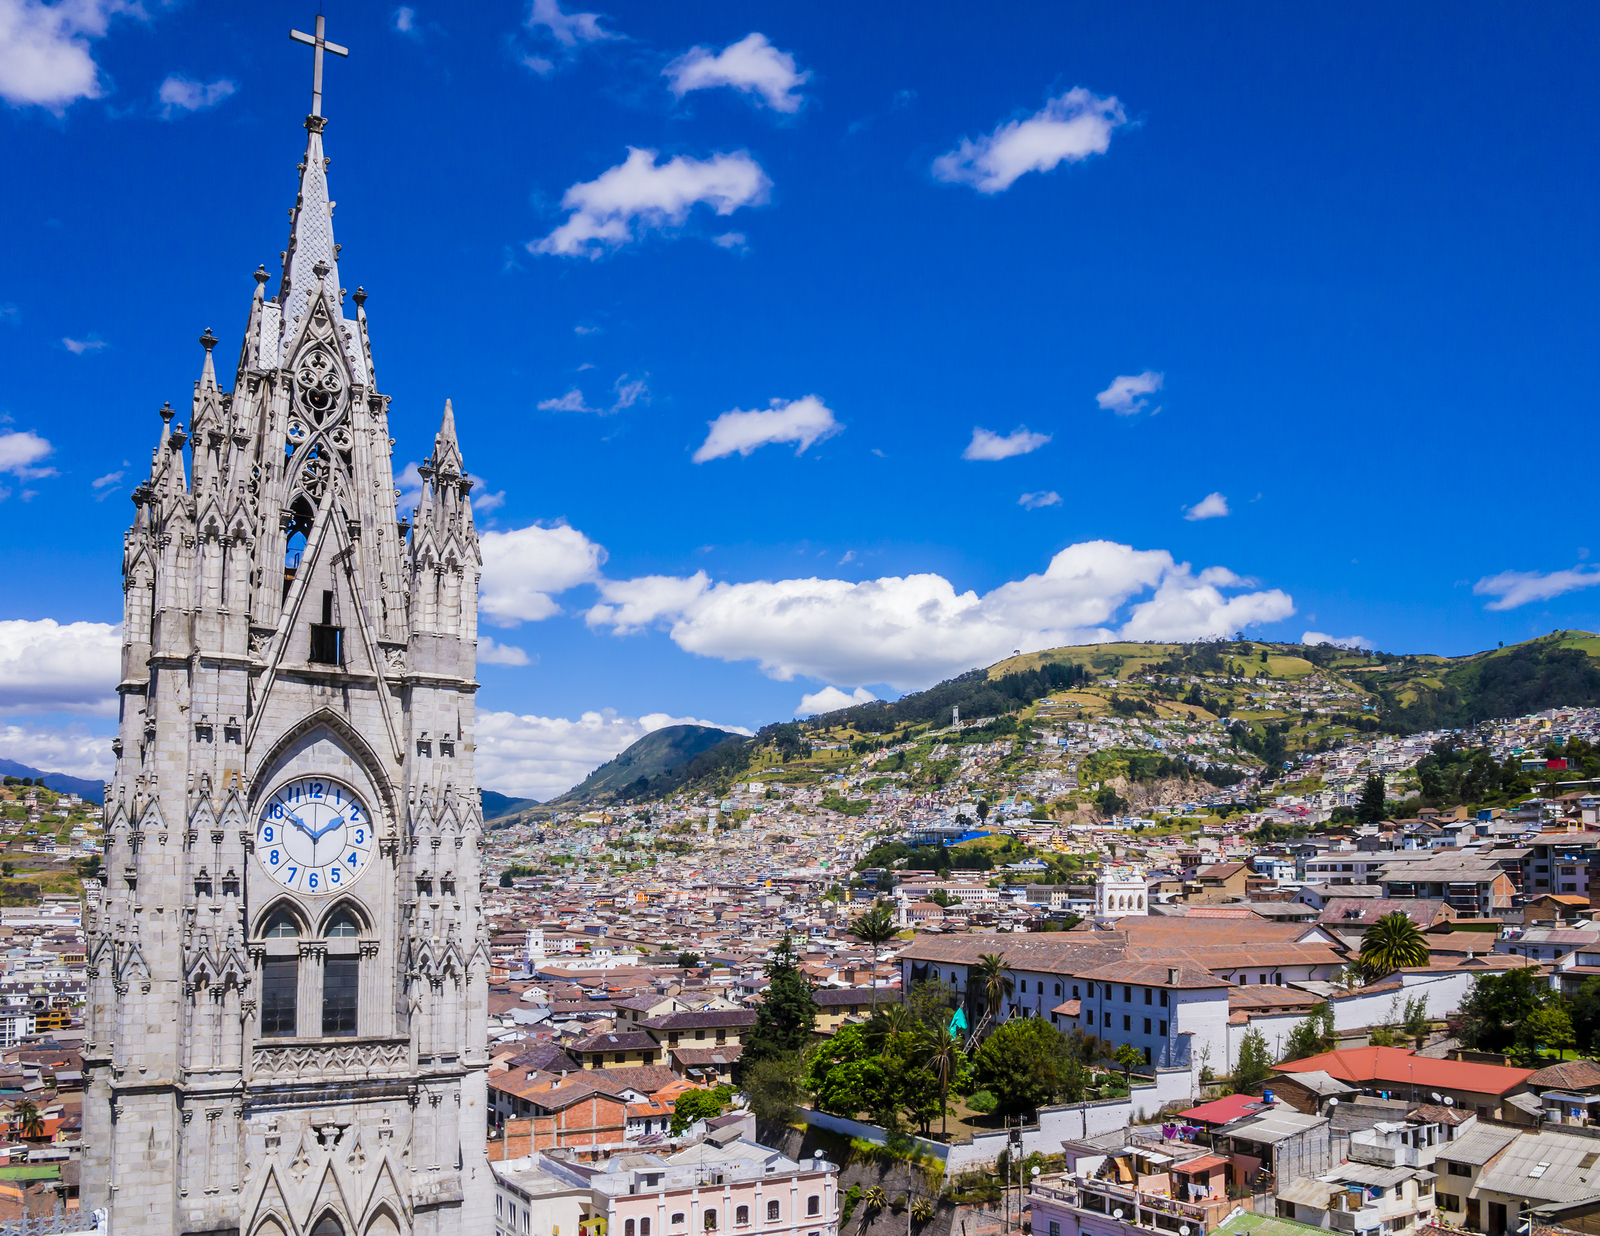 Ecuador, city view of Quito from gothic Basilica del Voto Nacional clock tower